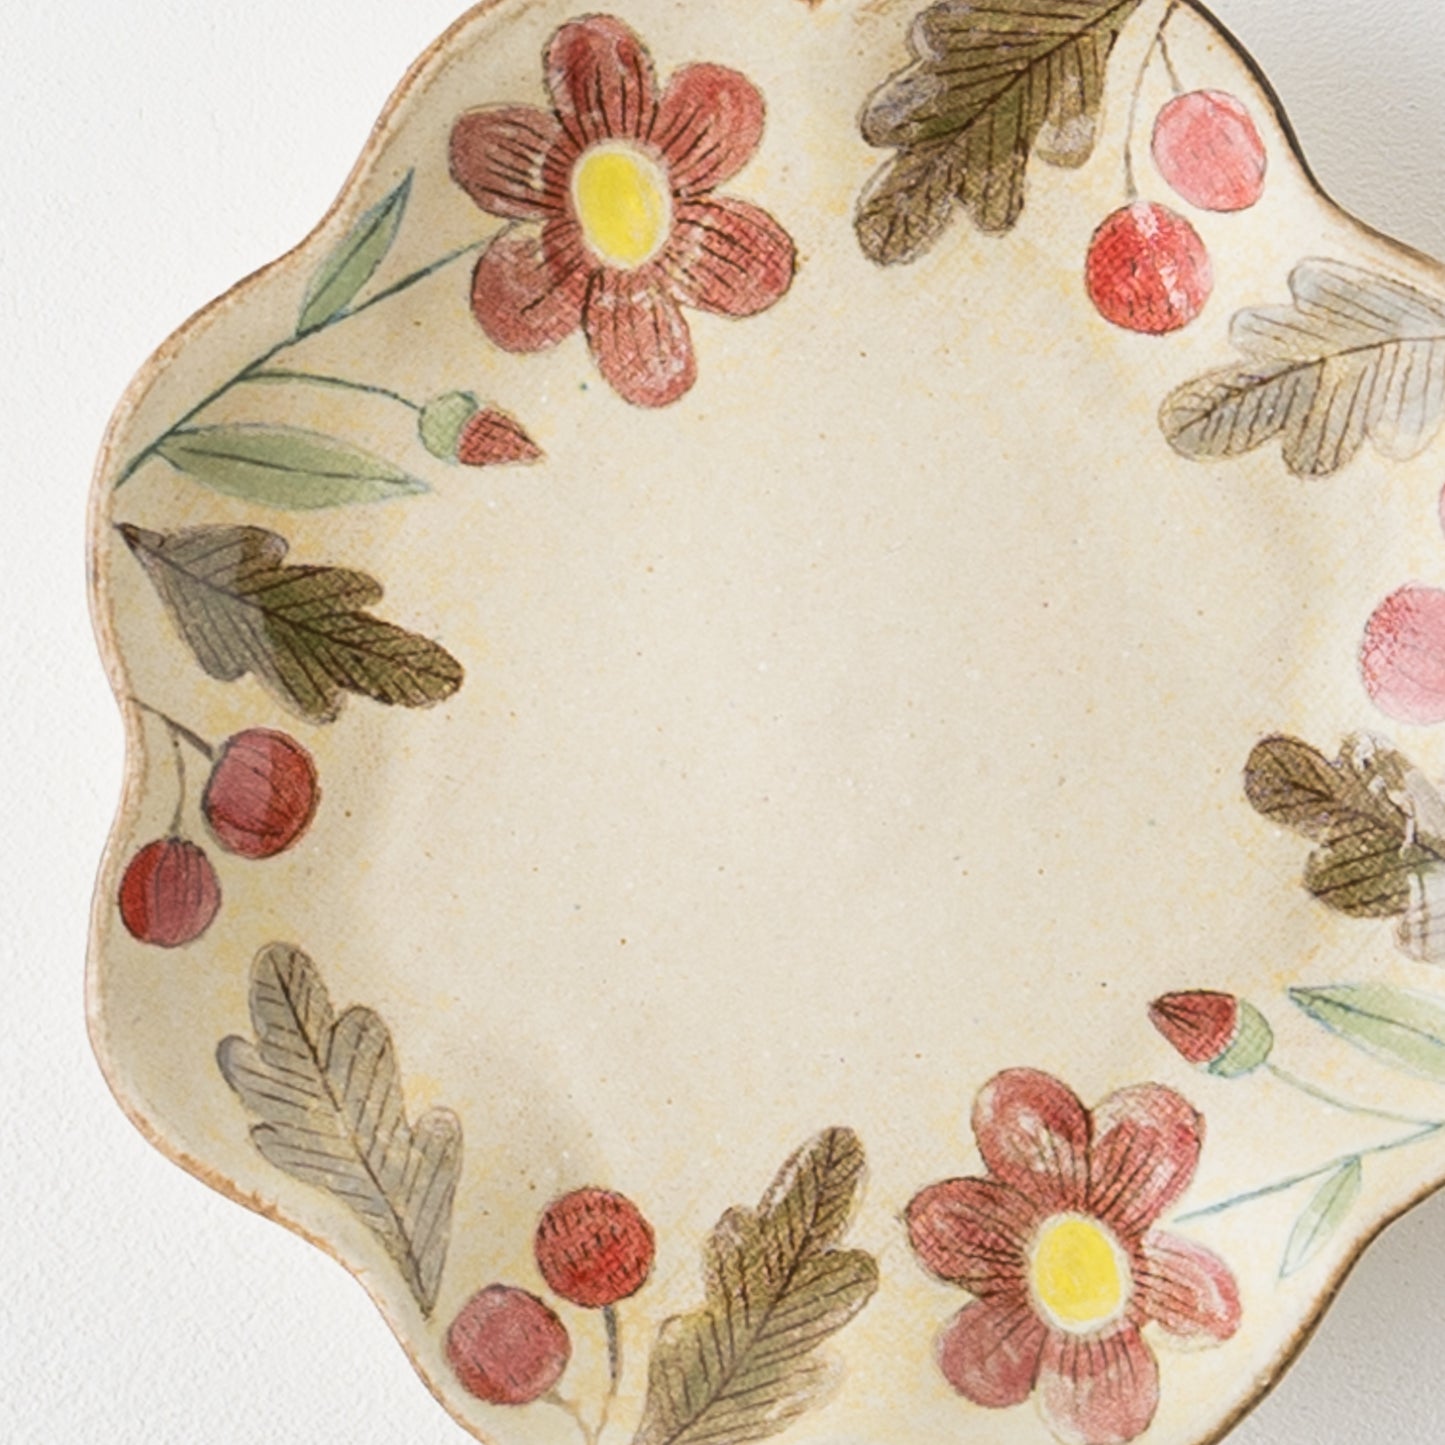 赤いお花と木の実にほっこり癒される森野奈津子さんの花模様の花型皿